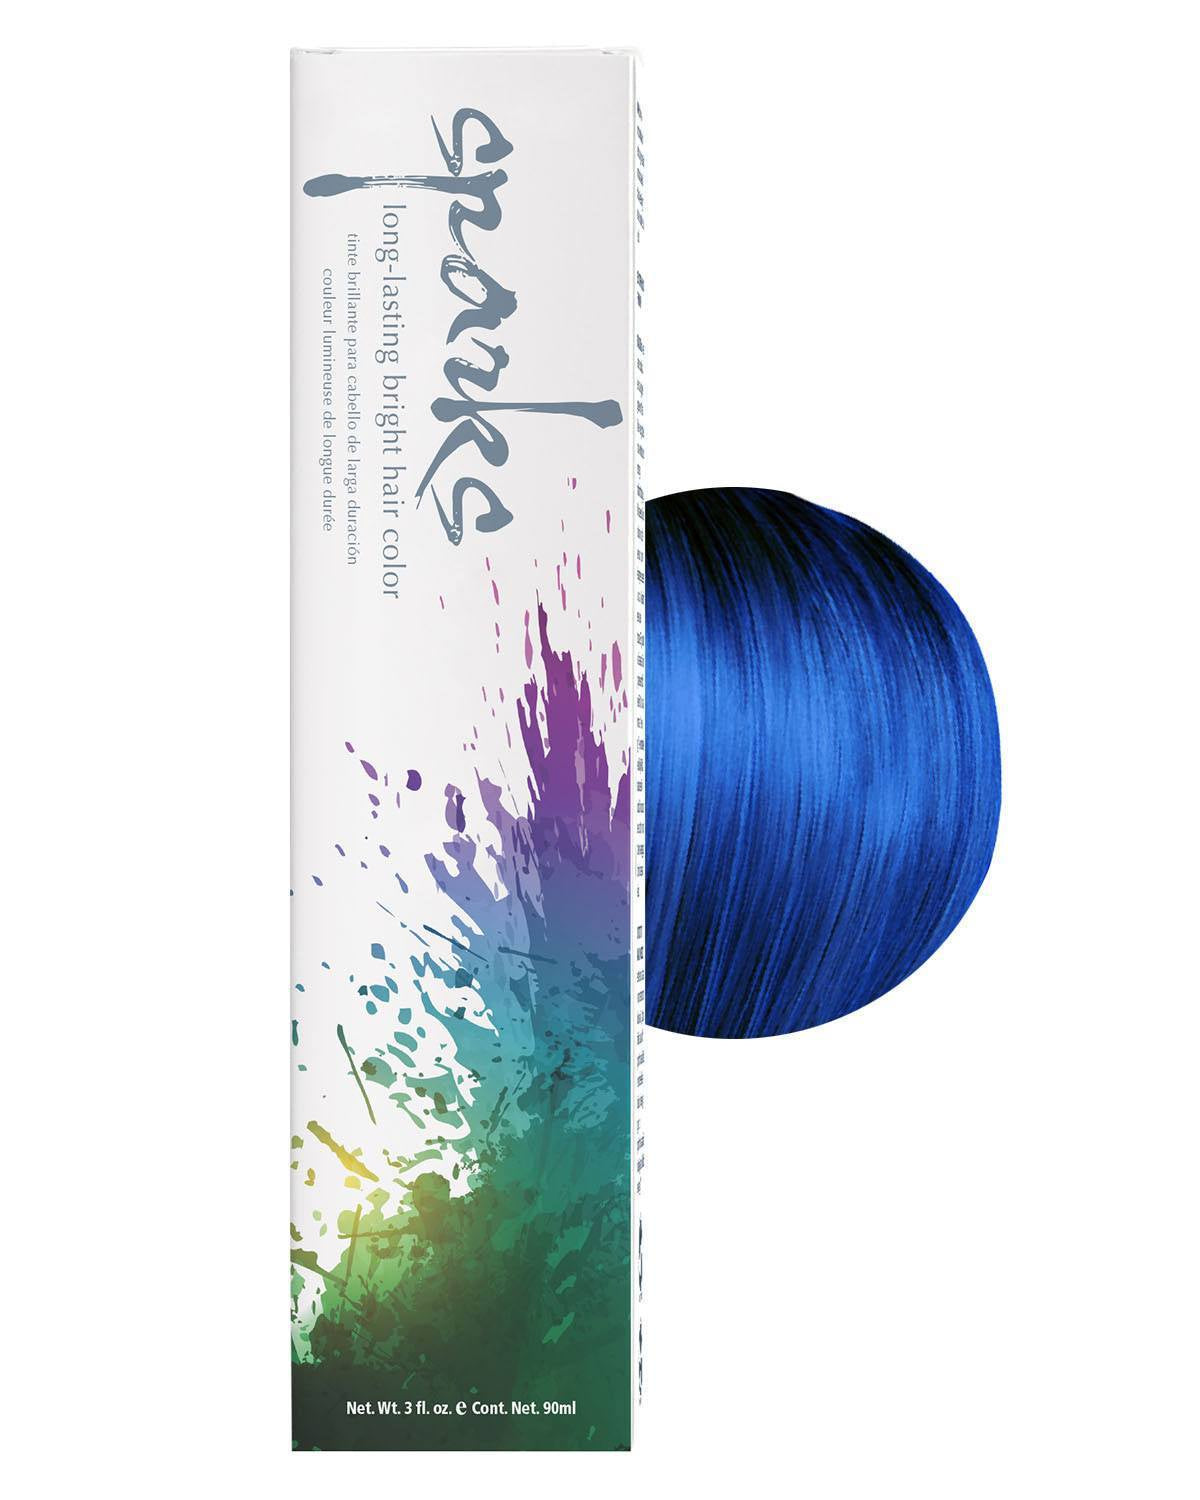 Electric Blue Hair  Blue hair, Electric blue hair, Bright blue hair